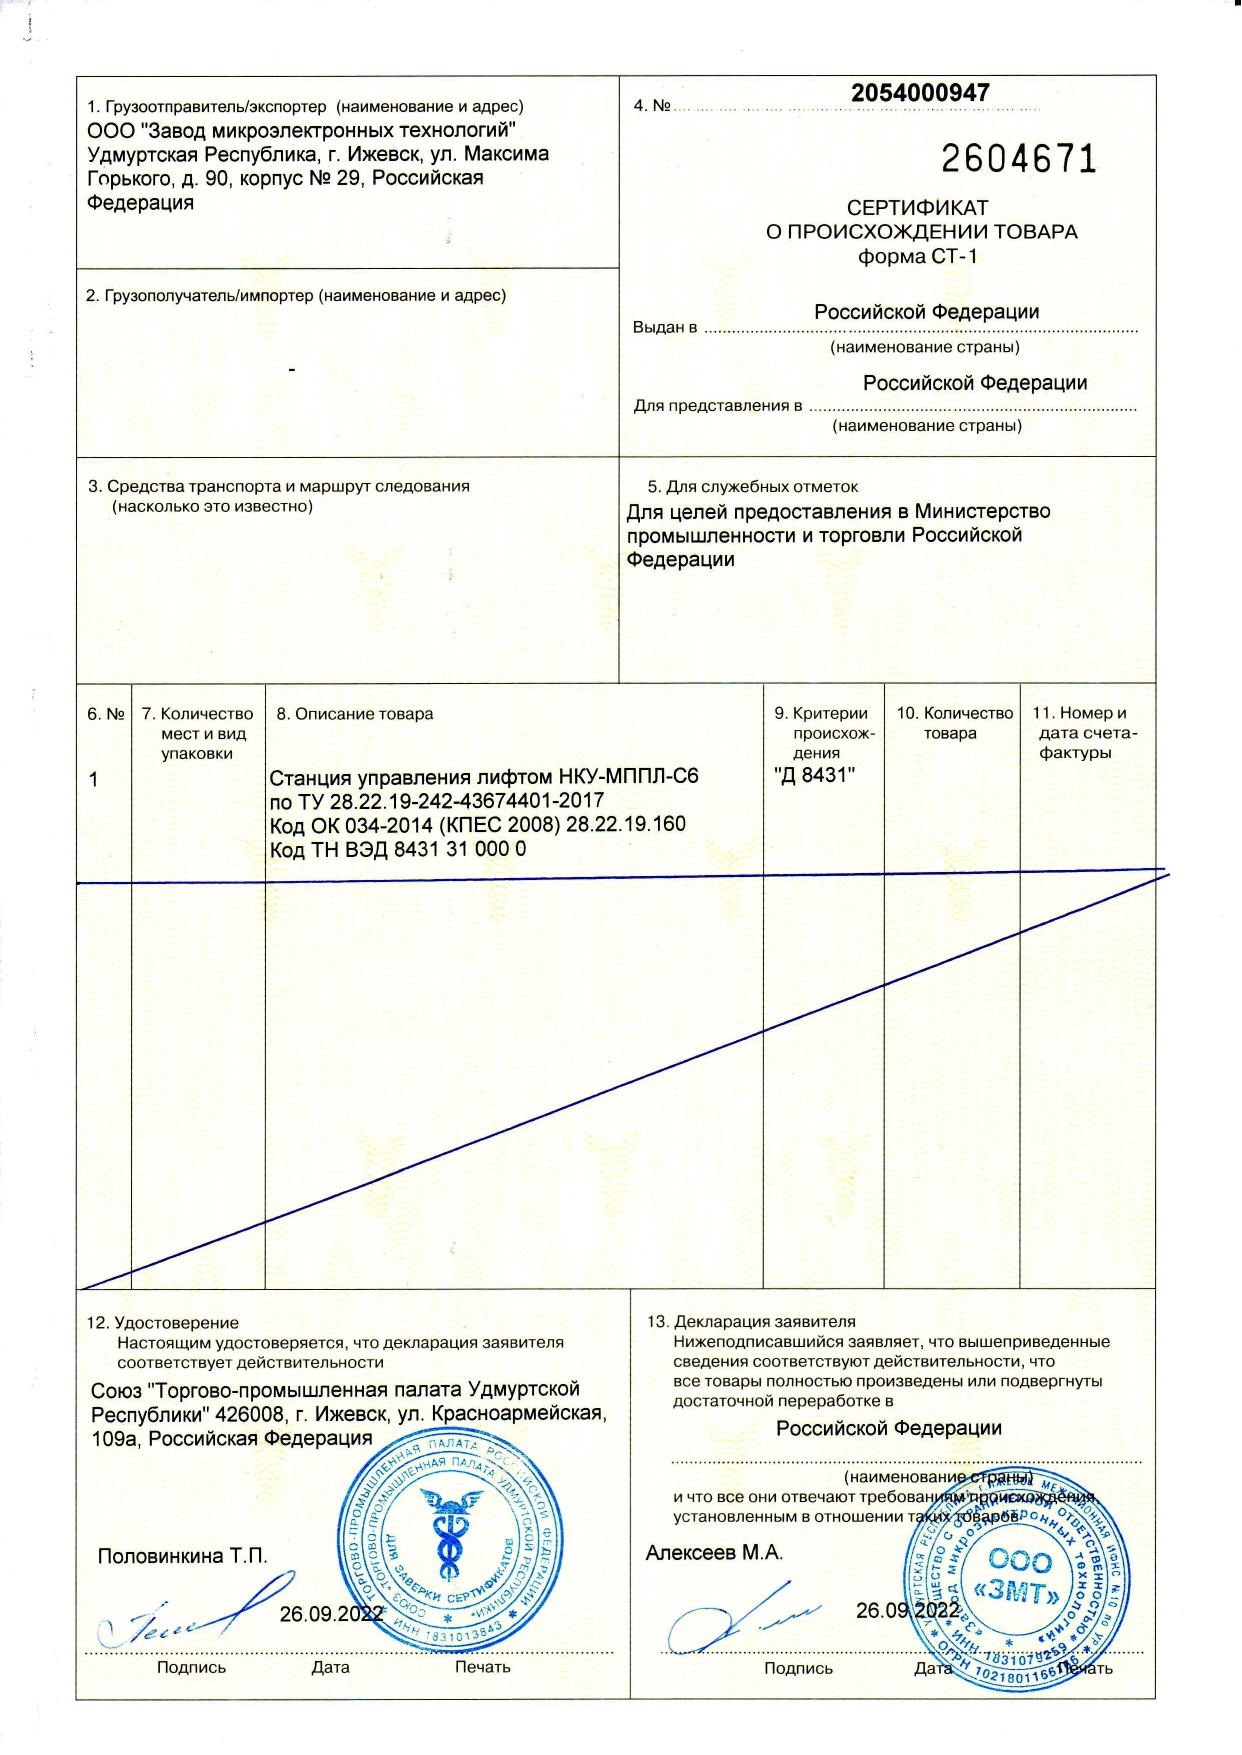 ООО «ЗМТ» получило сертифкат СТ-1 на станцию управления лифтом НКУ-МППЛ-С6